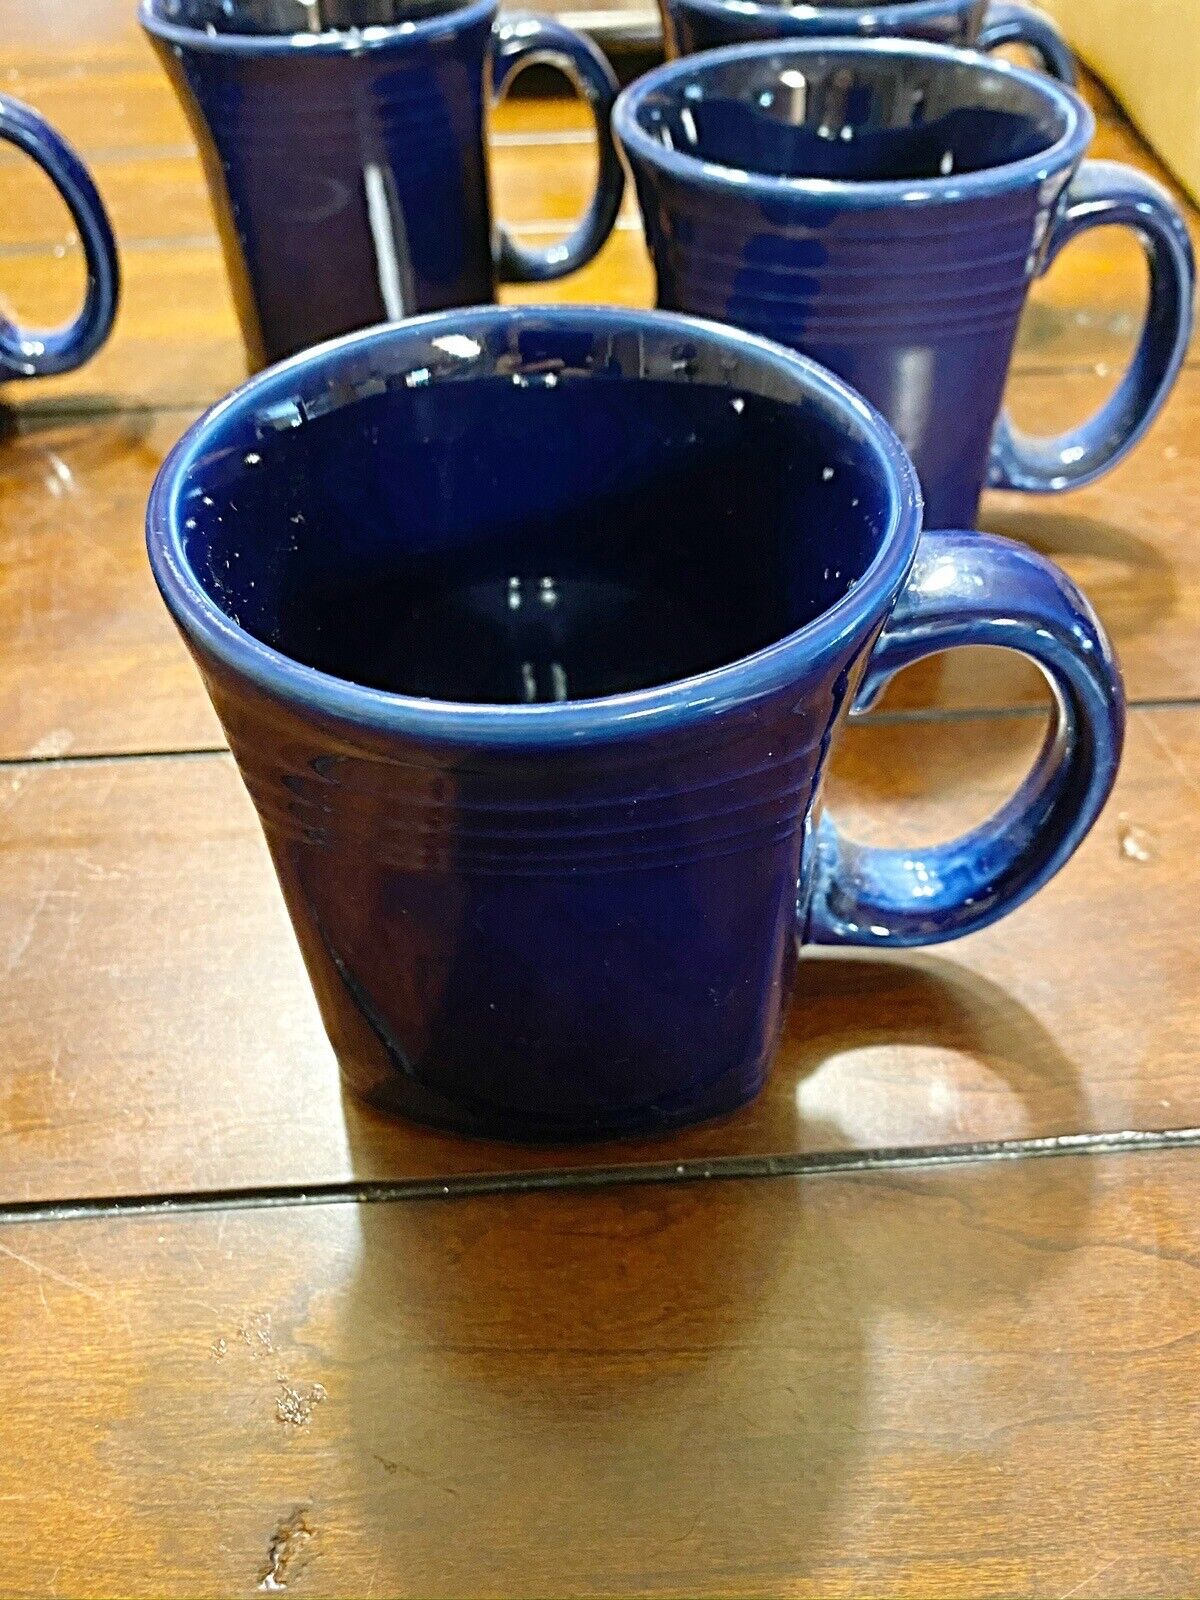 Cobalt Fiestaware Coffee Mug - Buy One Or More